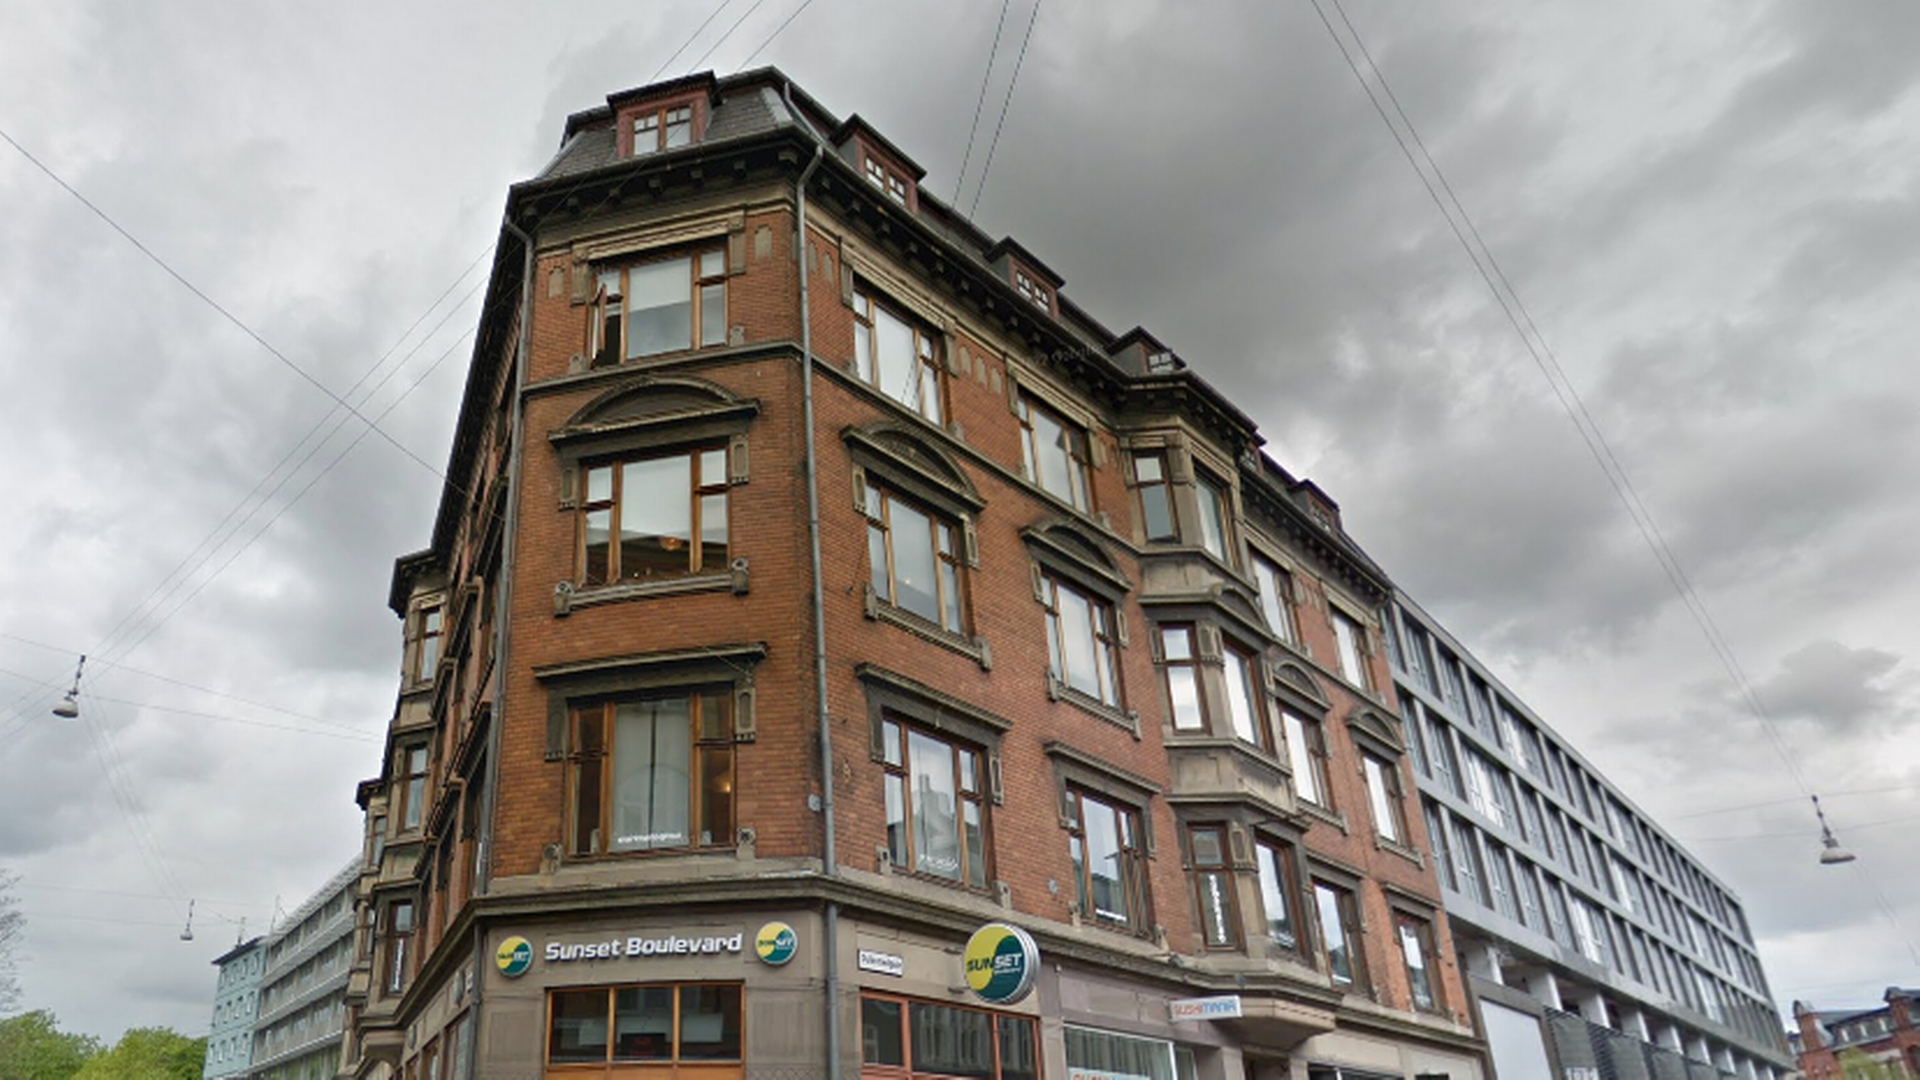 West Star Property Holding ejer bl.a. ejendommen på Guldsmedgade 1 centralt i Aarhus. Selskabet købte ejendommen for 78,5 mio. kr. i 2017. | Foto: Google Maps